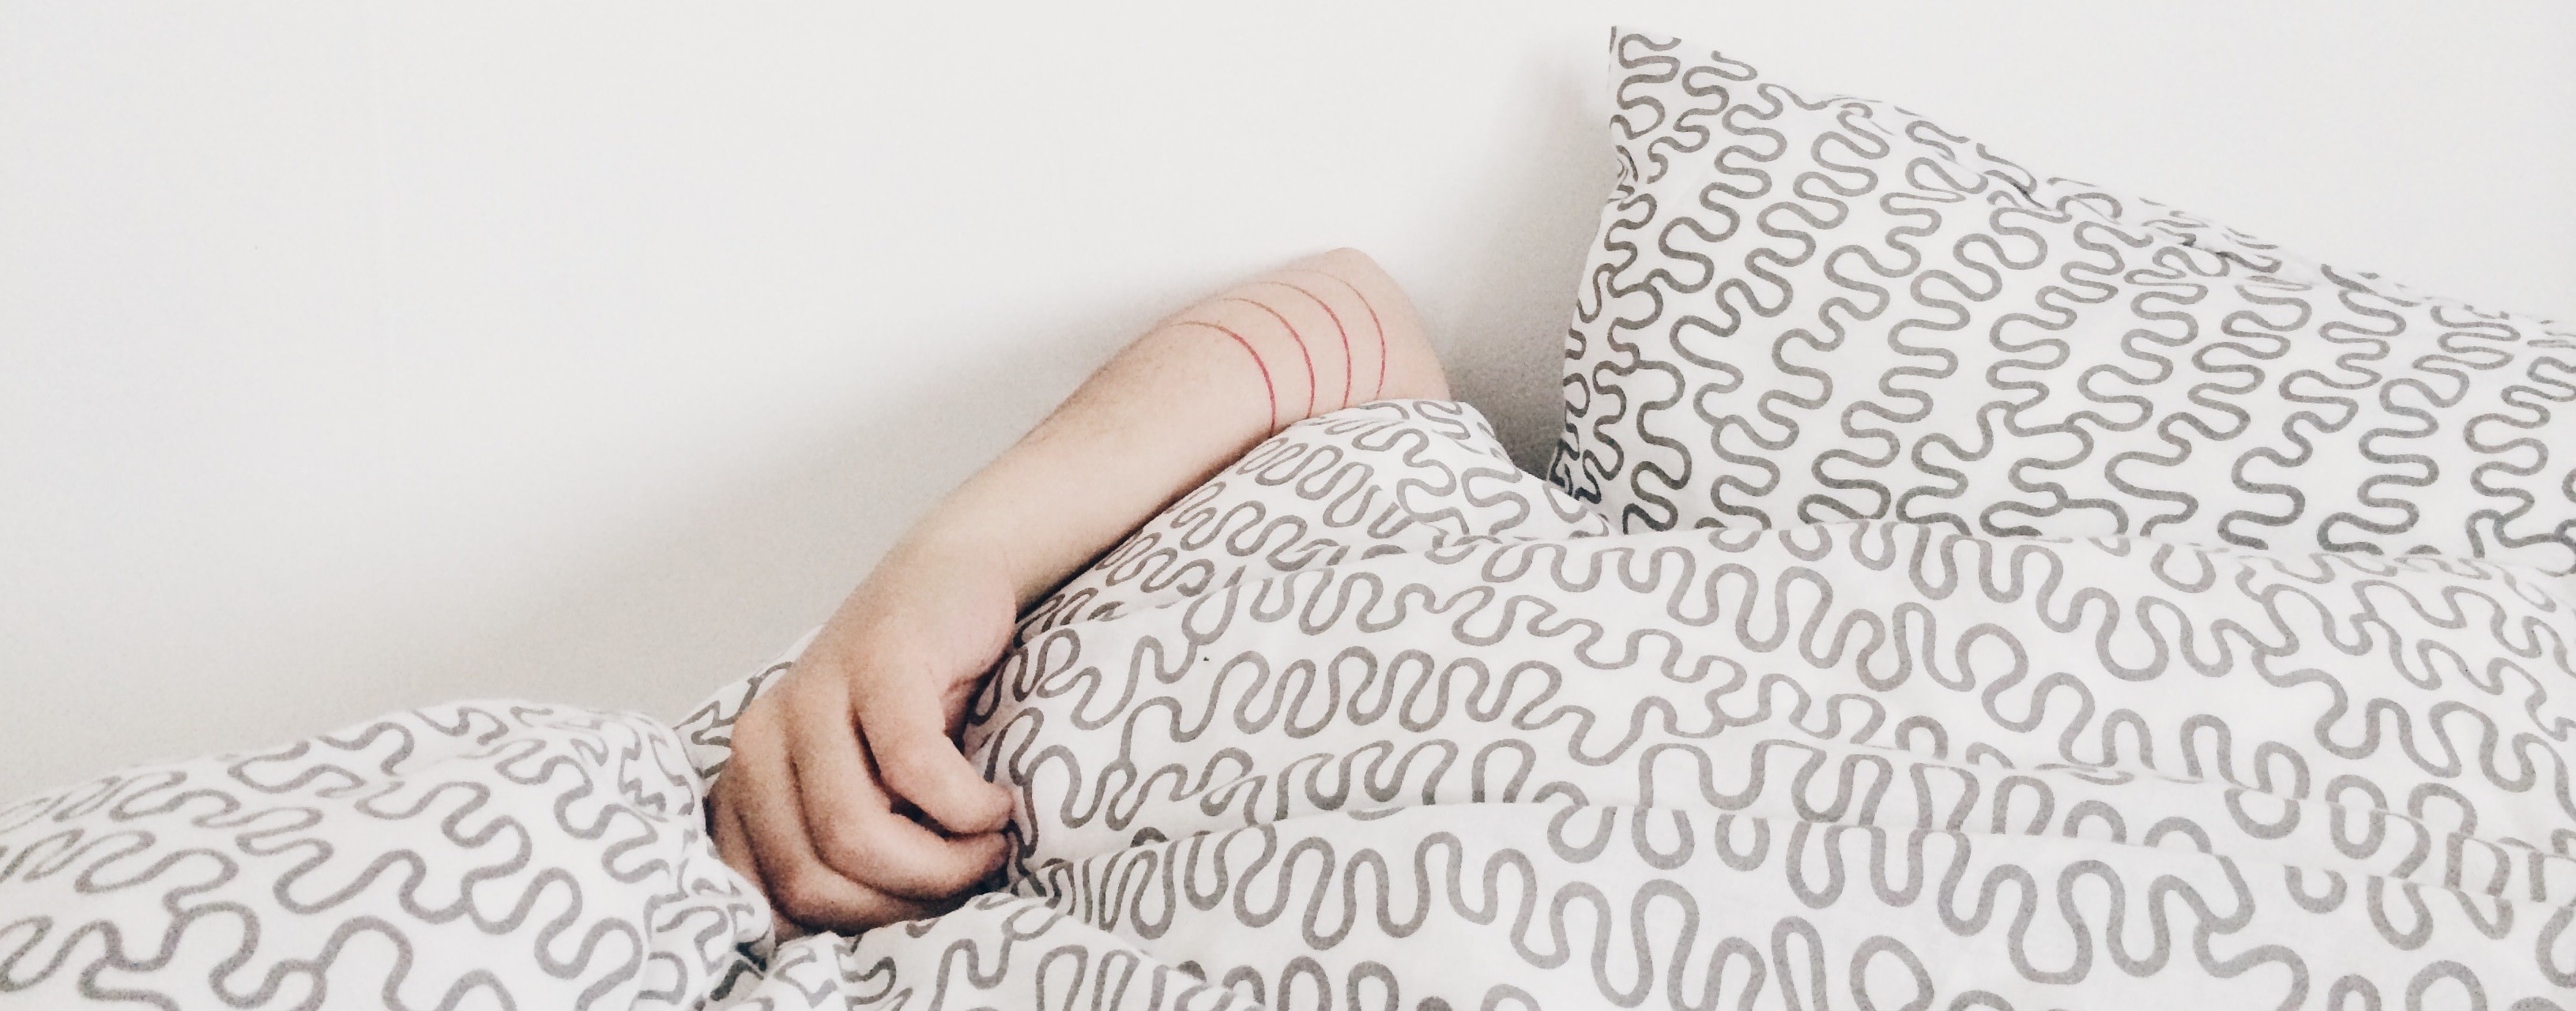 5 Tipps für einen erholsamen Schlaf durch Abdunkeln